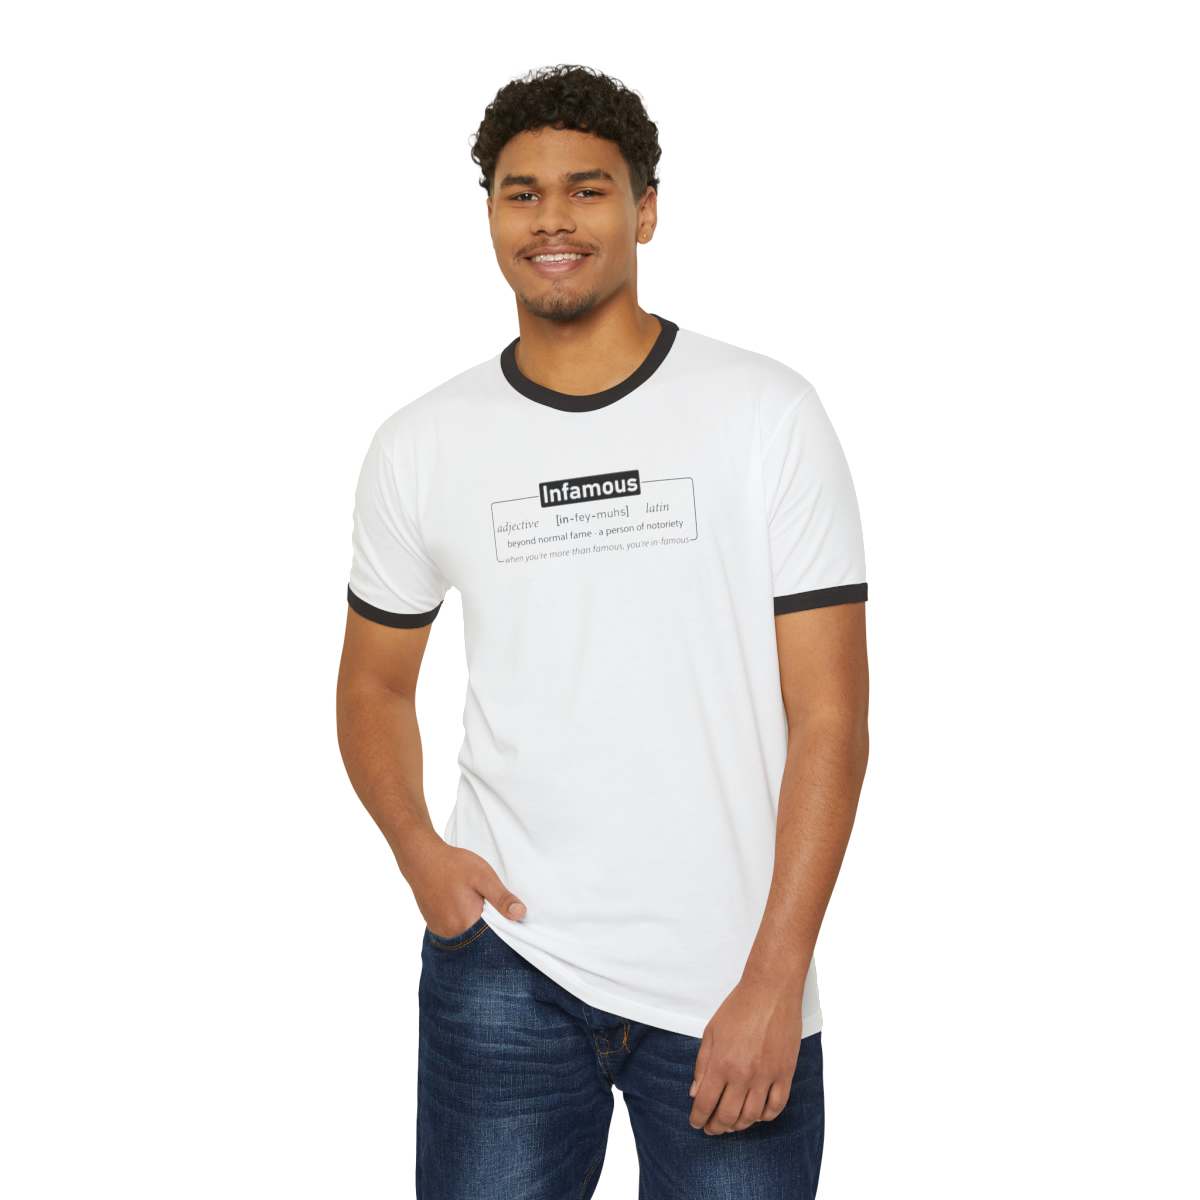 Infamous (light shirts) - Unisex Cotton Ringer T-Shirt